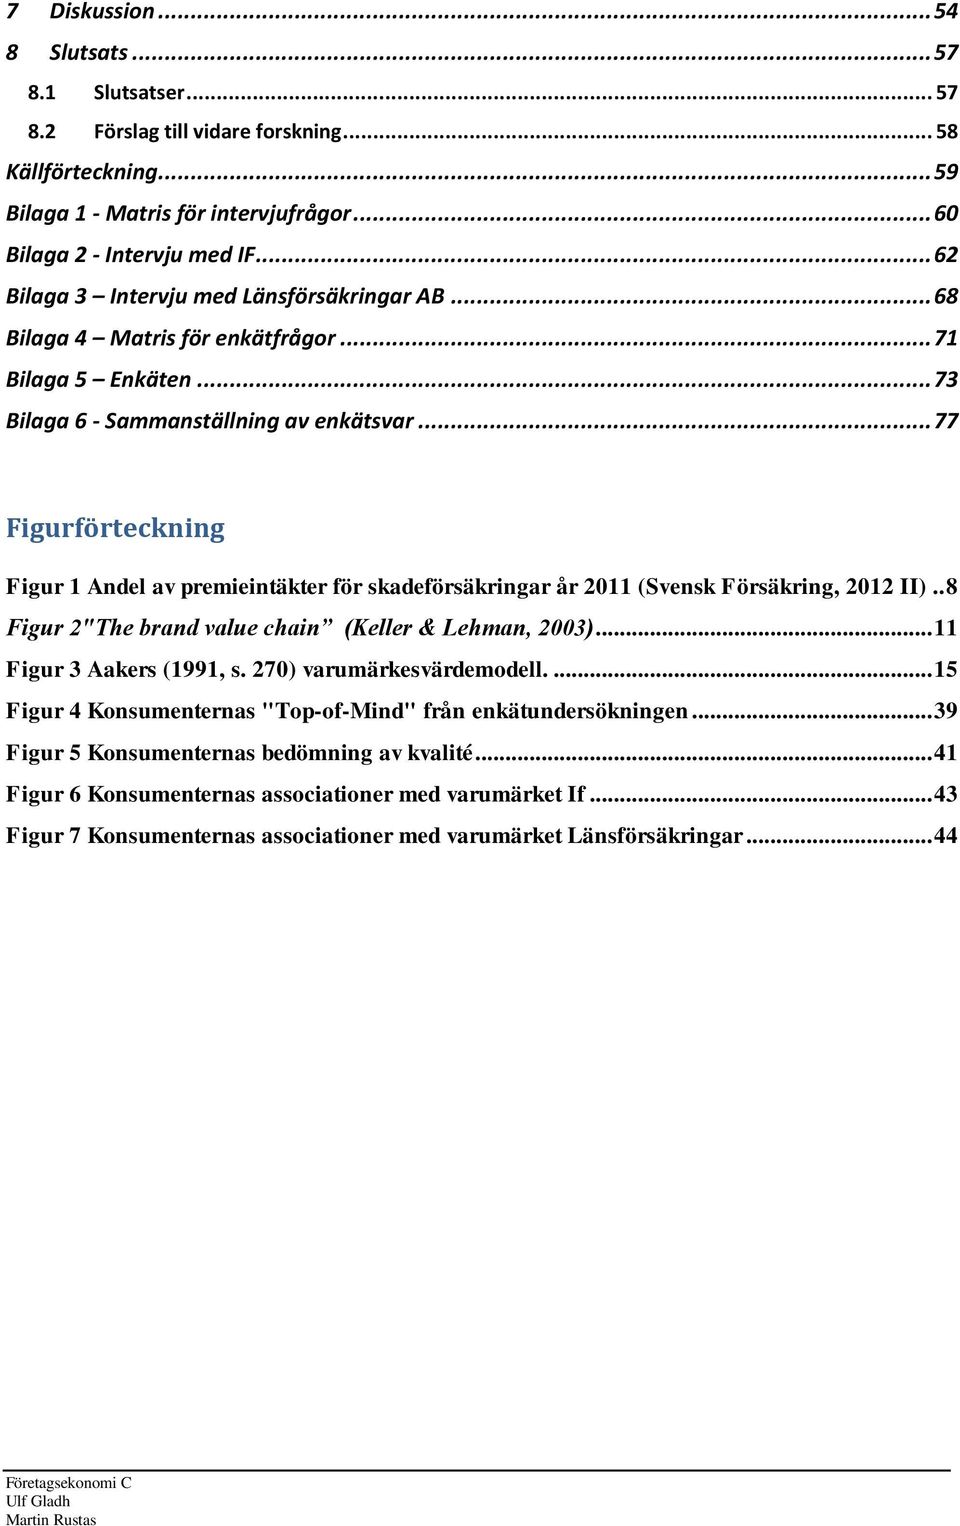 .. 77 Figurförteckning Figur 1 Andel av premieintäkter för skadeförsäkringar år 2011 (Svensk Försäkring, 2012 II).. 8 Figur 2"The brand value chain (Keller & Lehman, 2003)... 11 Figur 3 Aakers (1991, s.